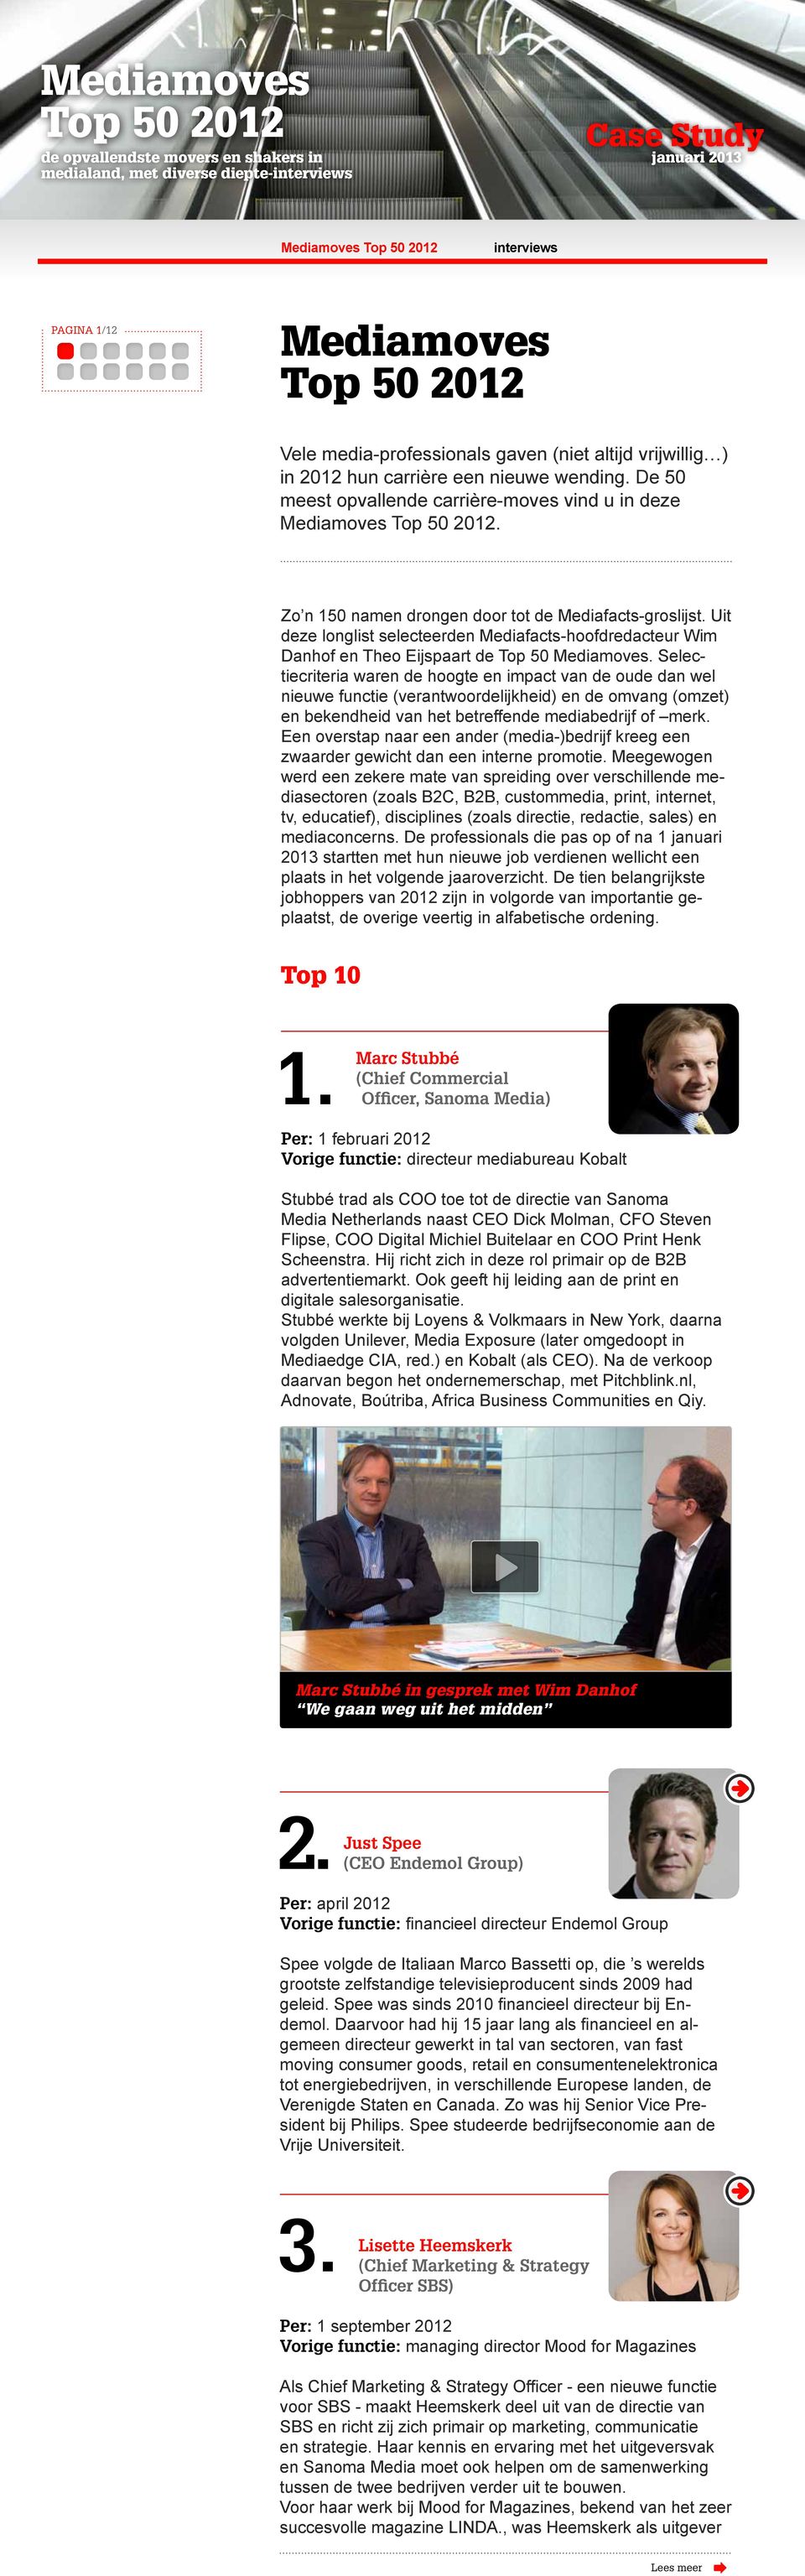 Uit deze longlist selecteerden Mediafacts-hoofdredacteur Wim Danhof en Theo Eijspaart de Top 50 Mediamoves.